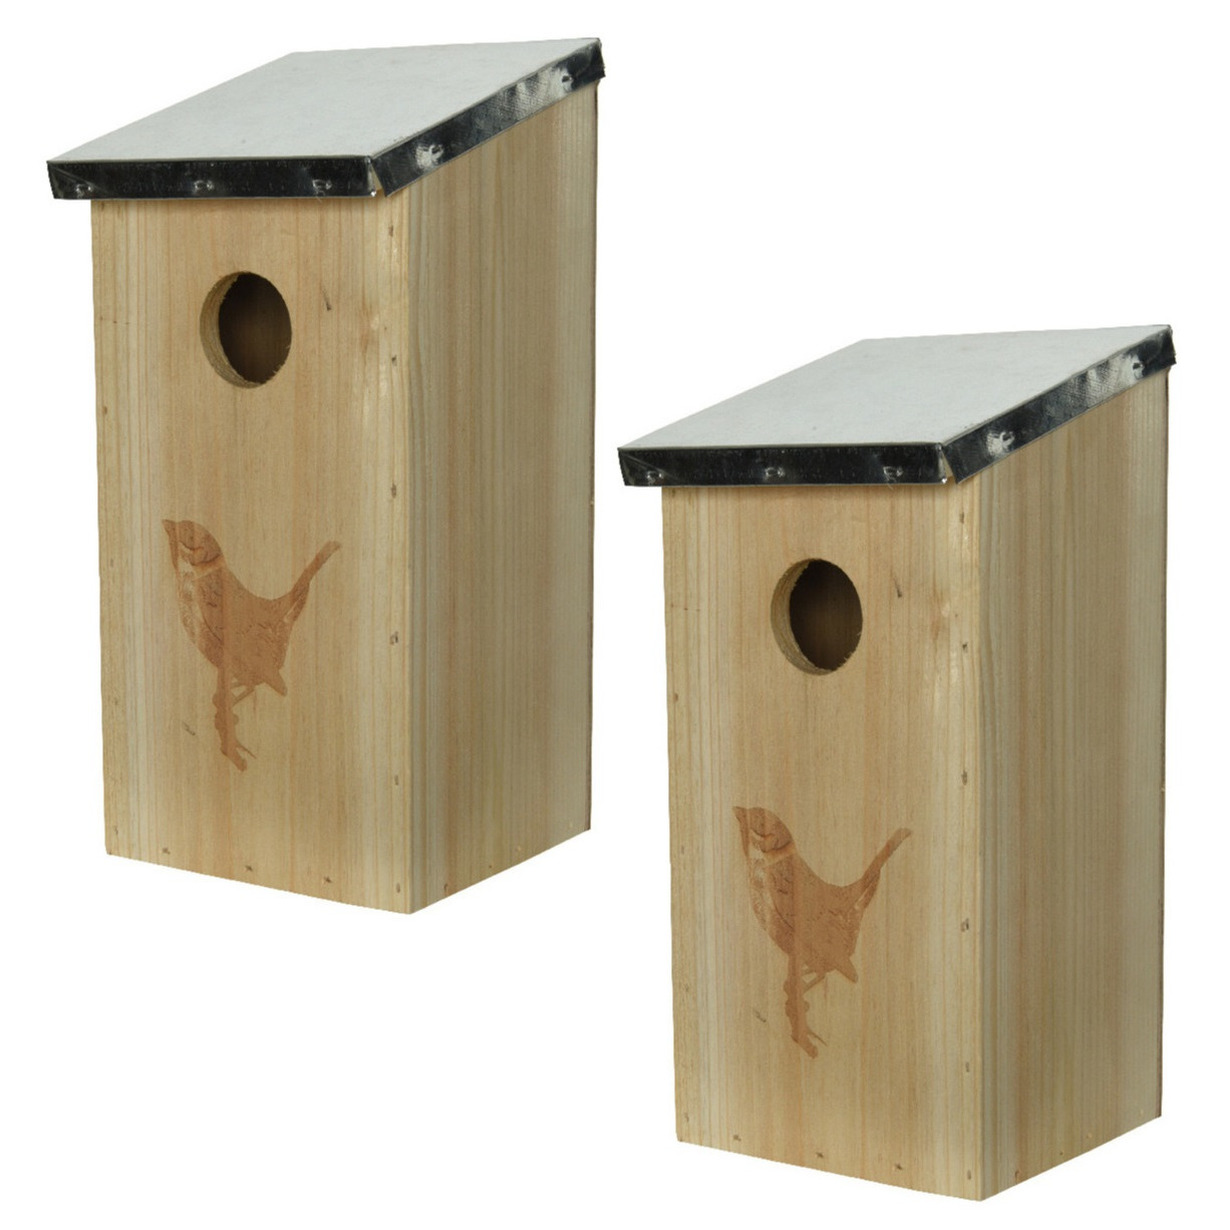 3x stuks vogelhuisjes-nestkastjes van vurenhout 12 x 13,5 x 26 cm